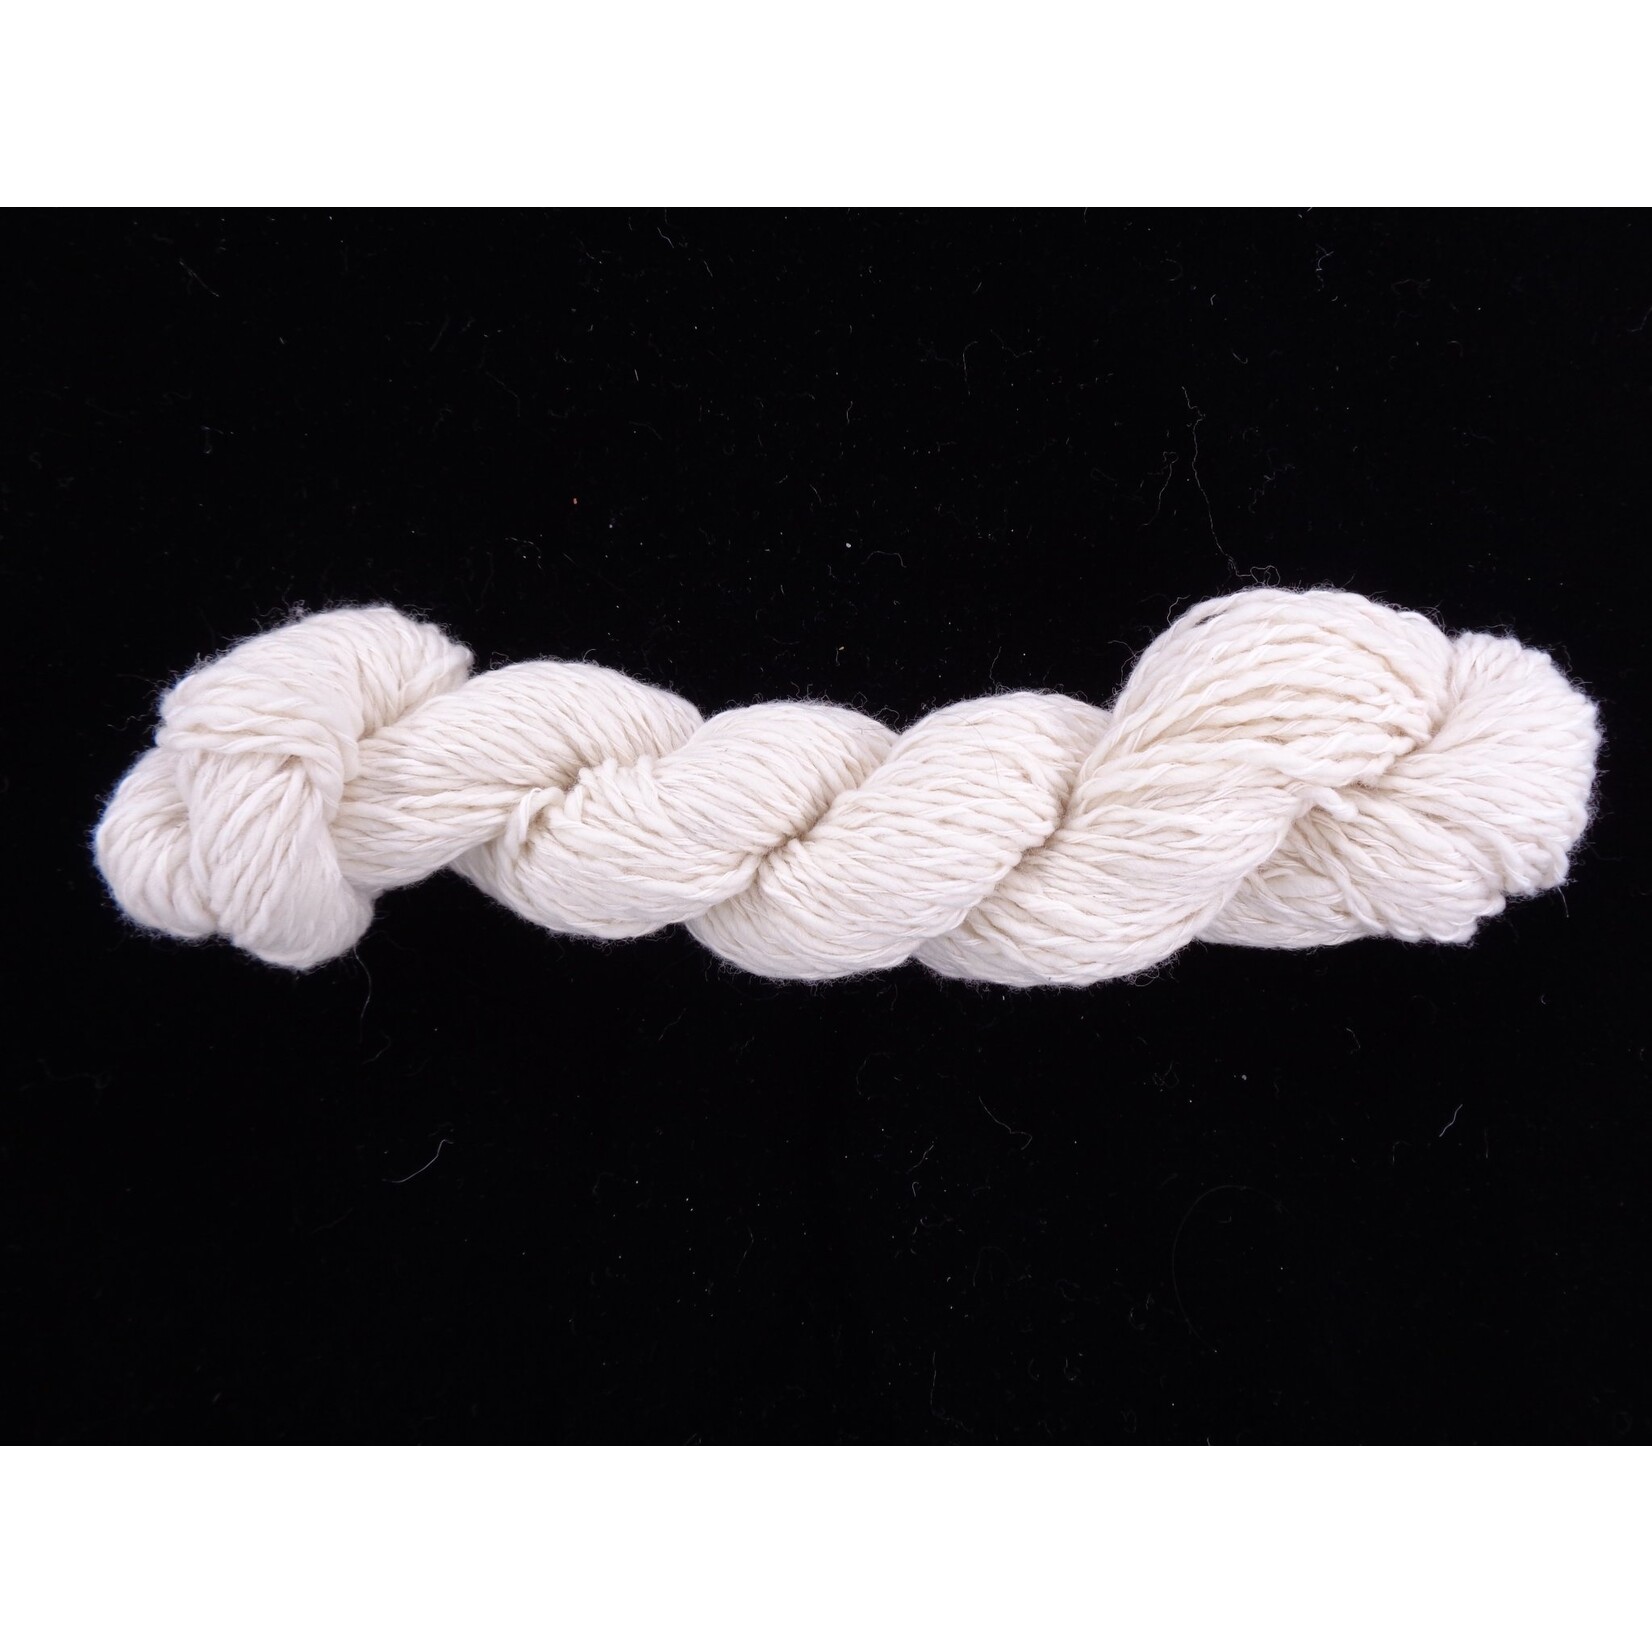 Kraemer Yarns Natural Yarn-Shirley--Bulky-70% U.S. Merino Wool / 30% Cotton